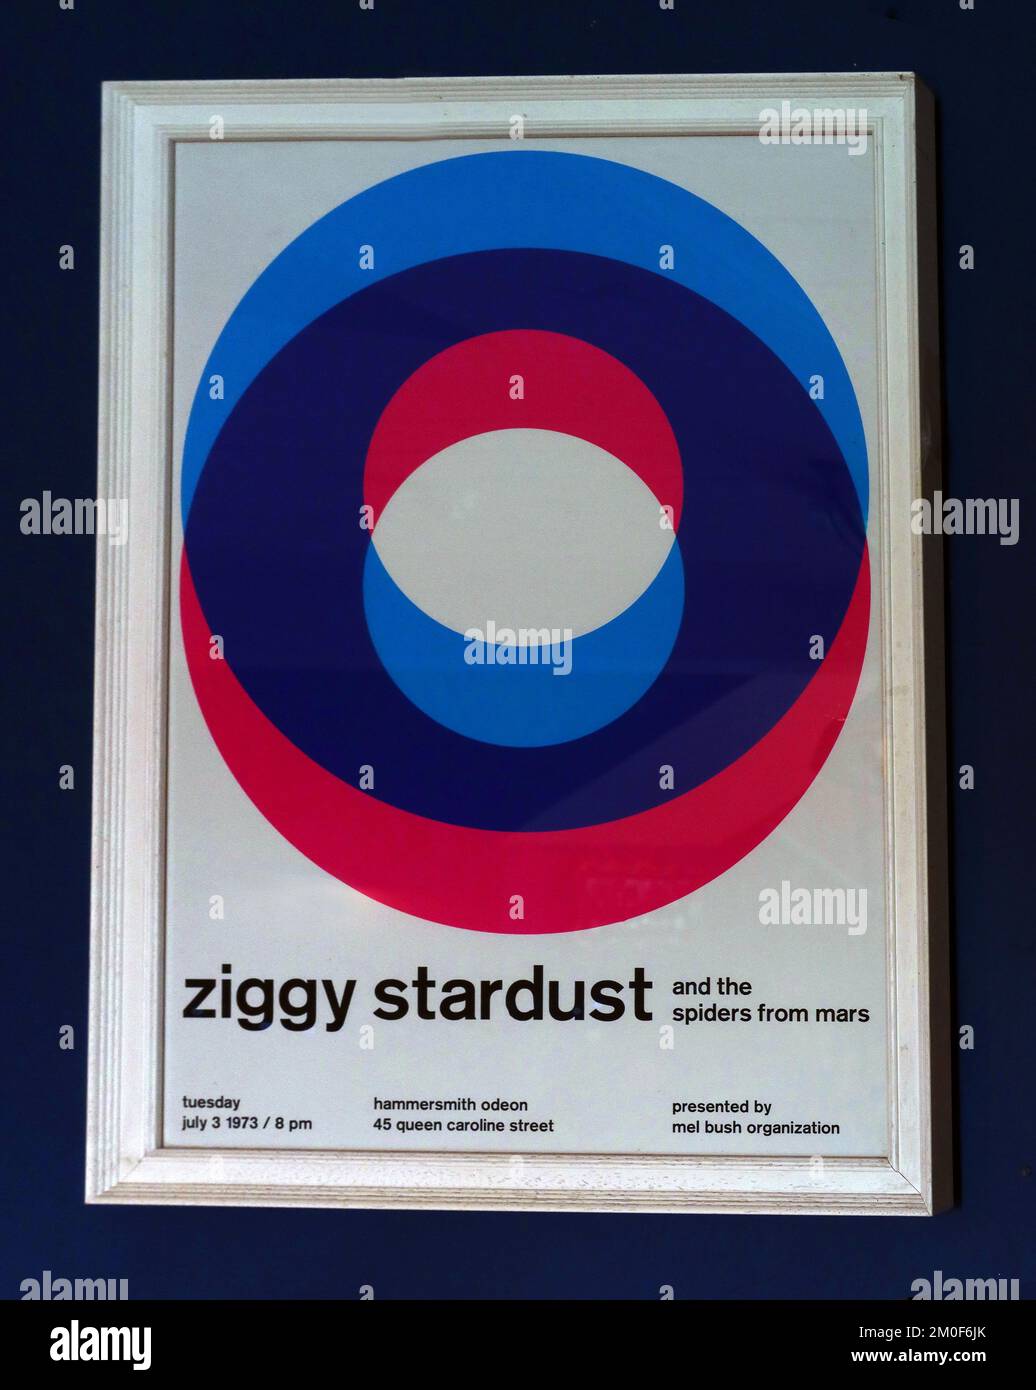 Ziggy Stardust encadré et les araignées de Mars poster, Hammersmith Odeon, 45 Queen Caroline Street, Londres, Angleterre, Royaume-Uni, W6 9BZ, 3rd juillet 1973 Banque D'Images